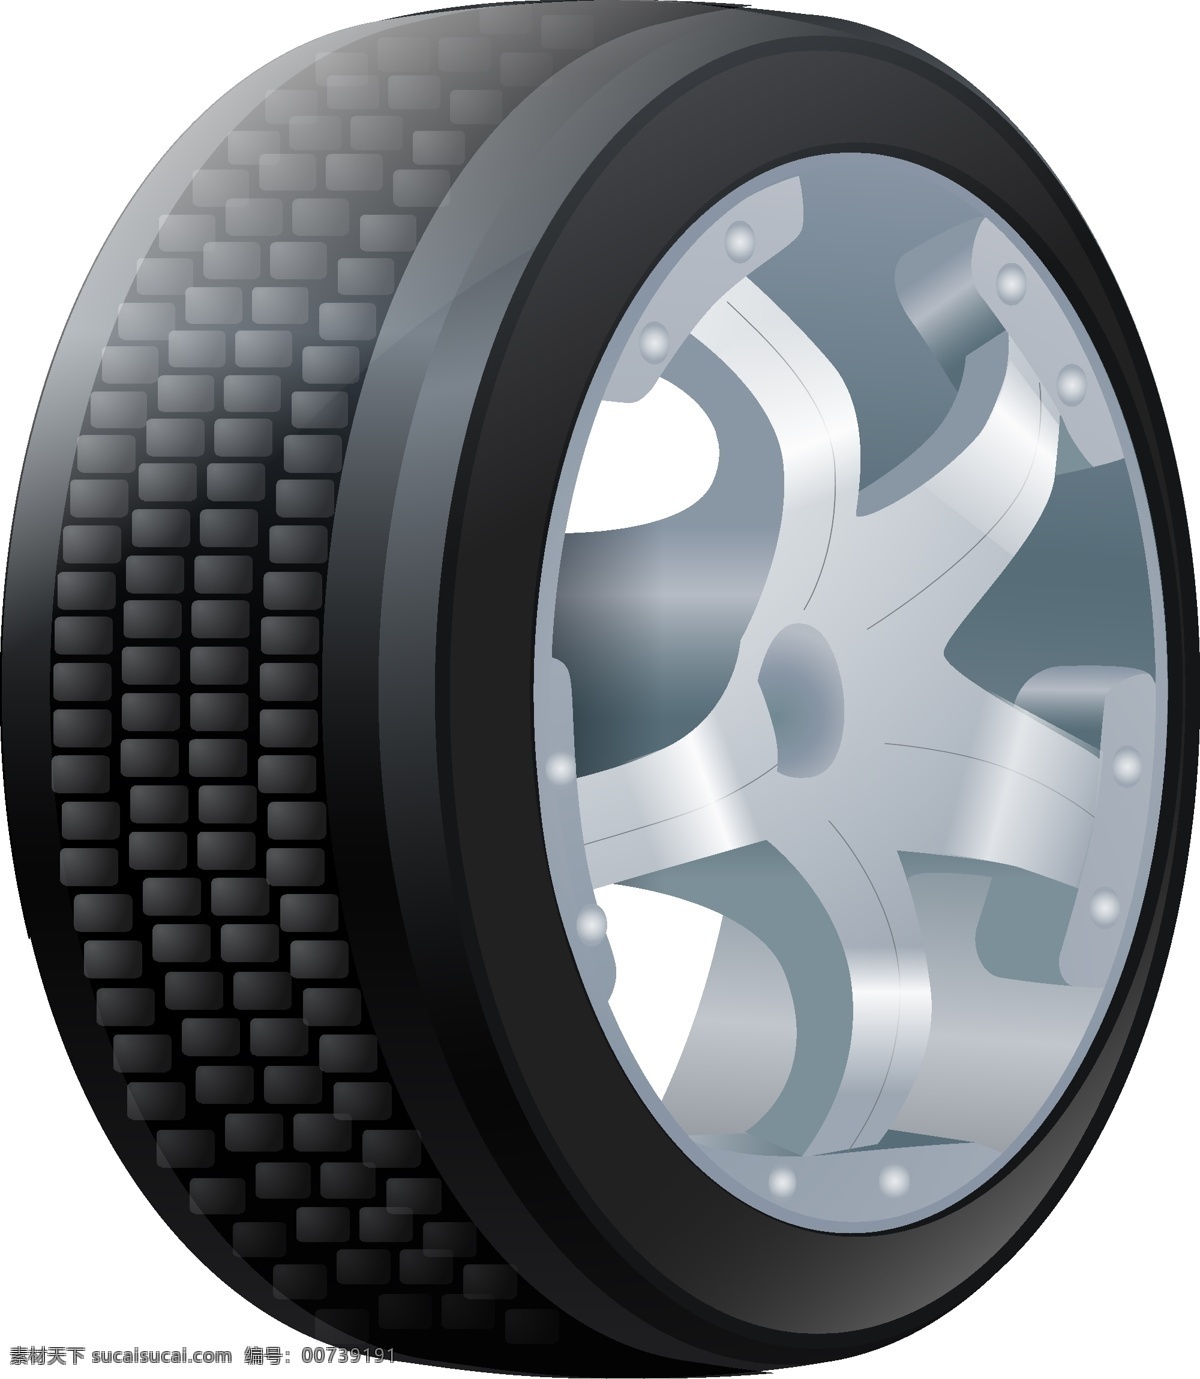 崭新 黑色金属 汽车 轮子 矢量图 黑色 圆形 车轮 透明元素 ai元素 免抠元素